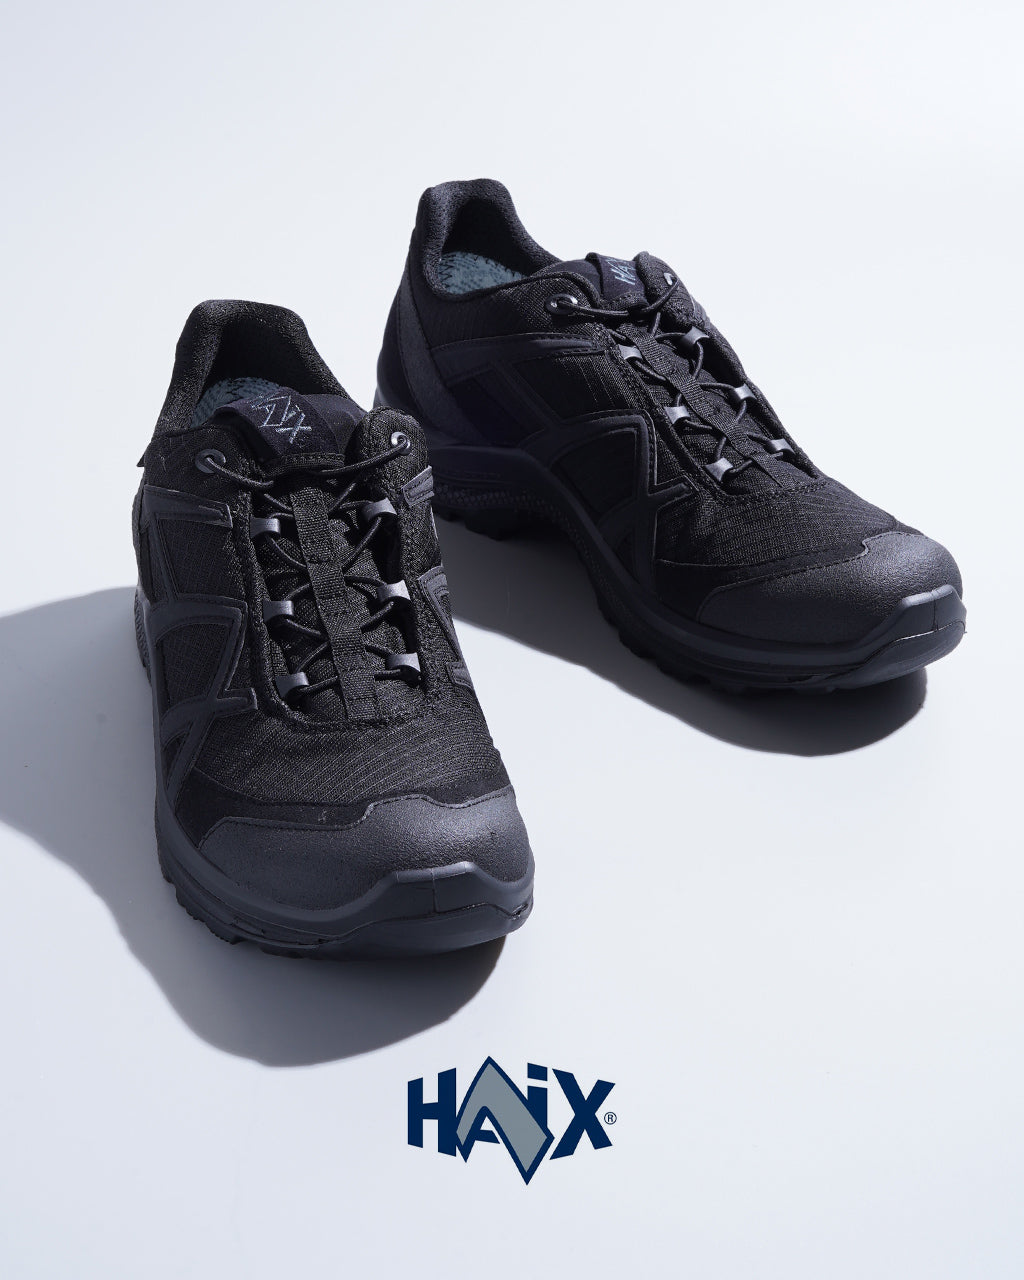 HAiX ハイックス ブラックイーグル アスレチック 2.1 ゴアテックス ロー BLACK EAGLE ATHLETIC 2.1 GTX LOW スニーカー 【送料無料】